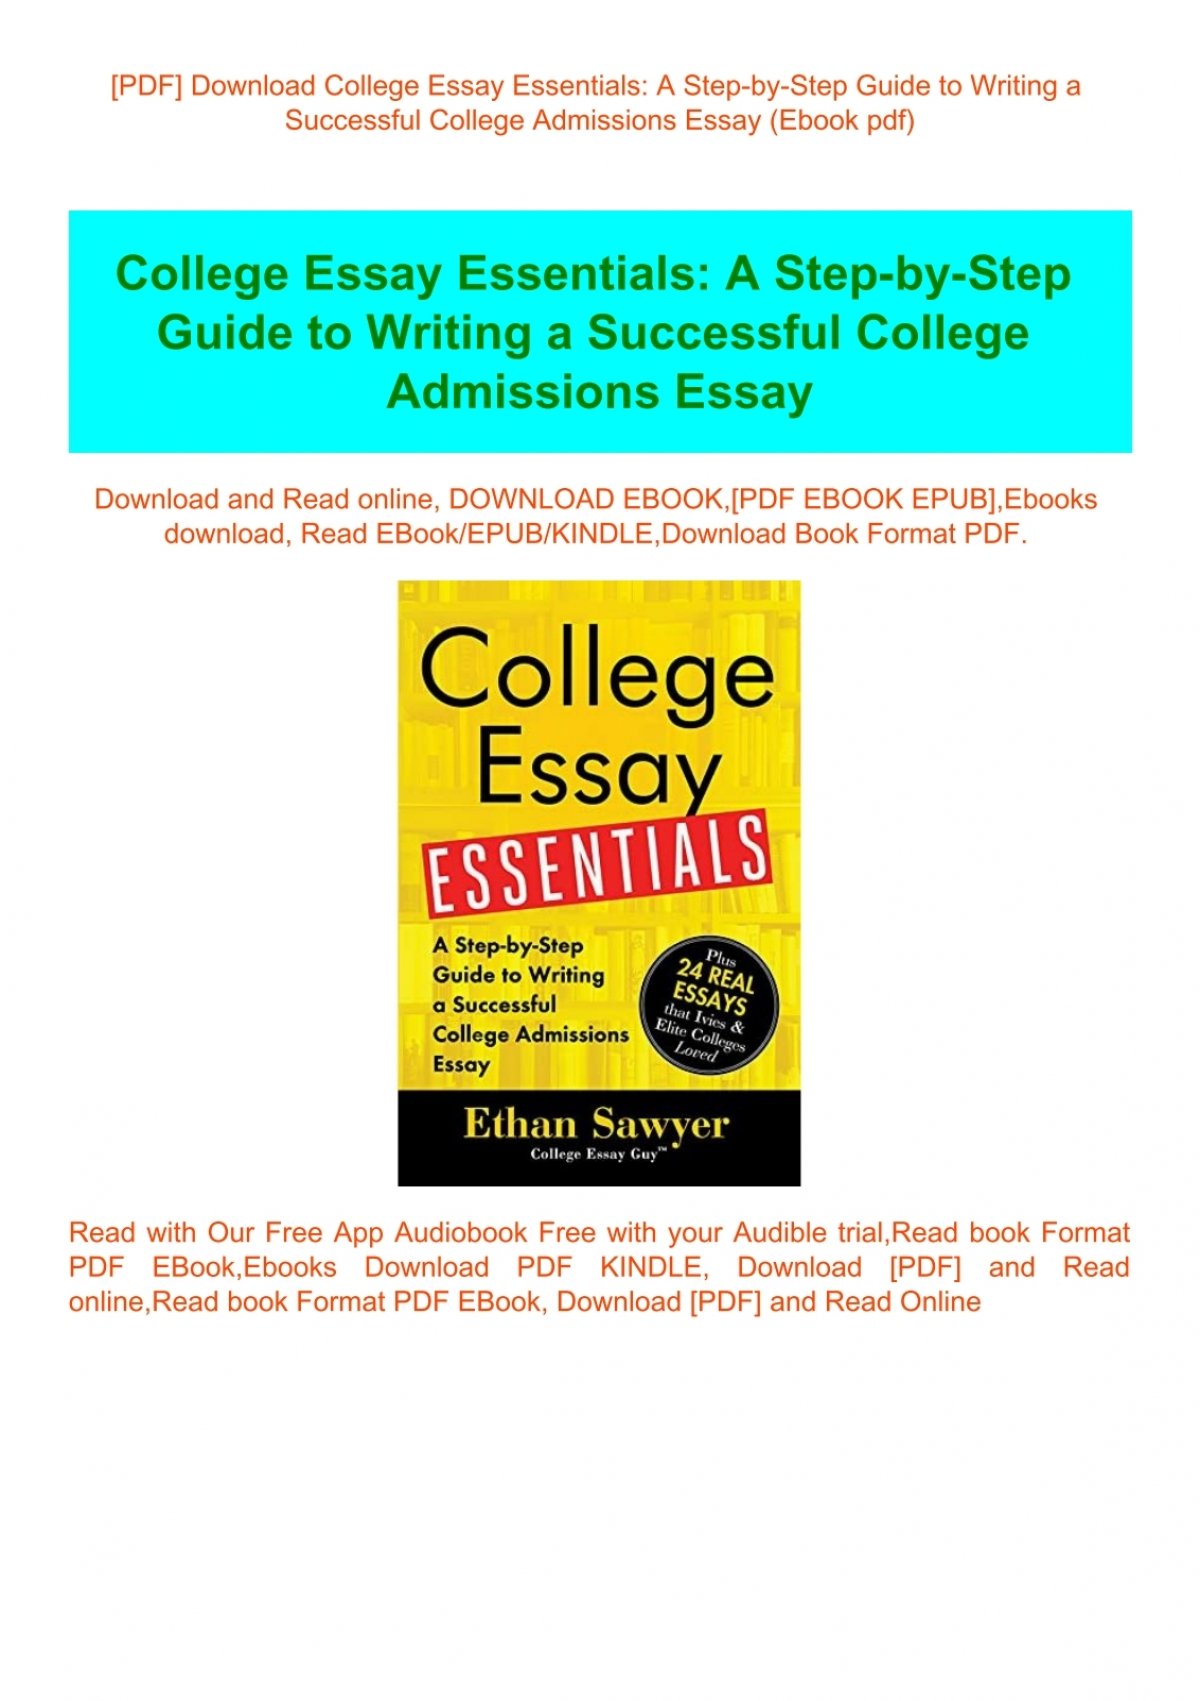 essay essentials pdf